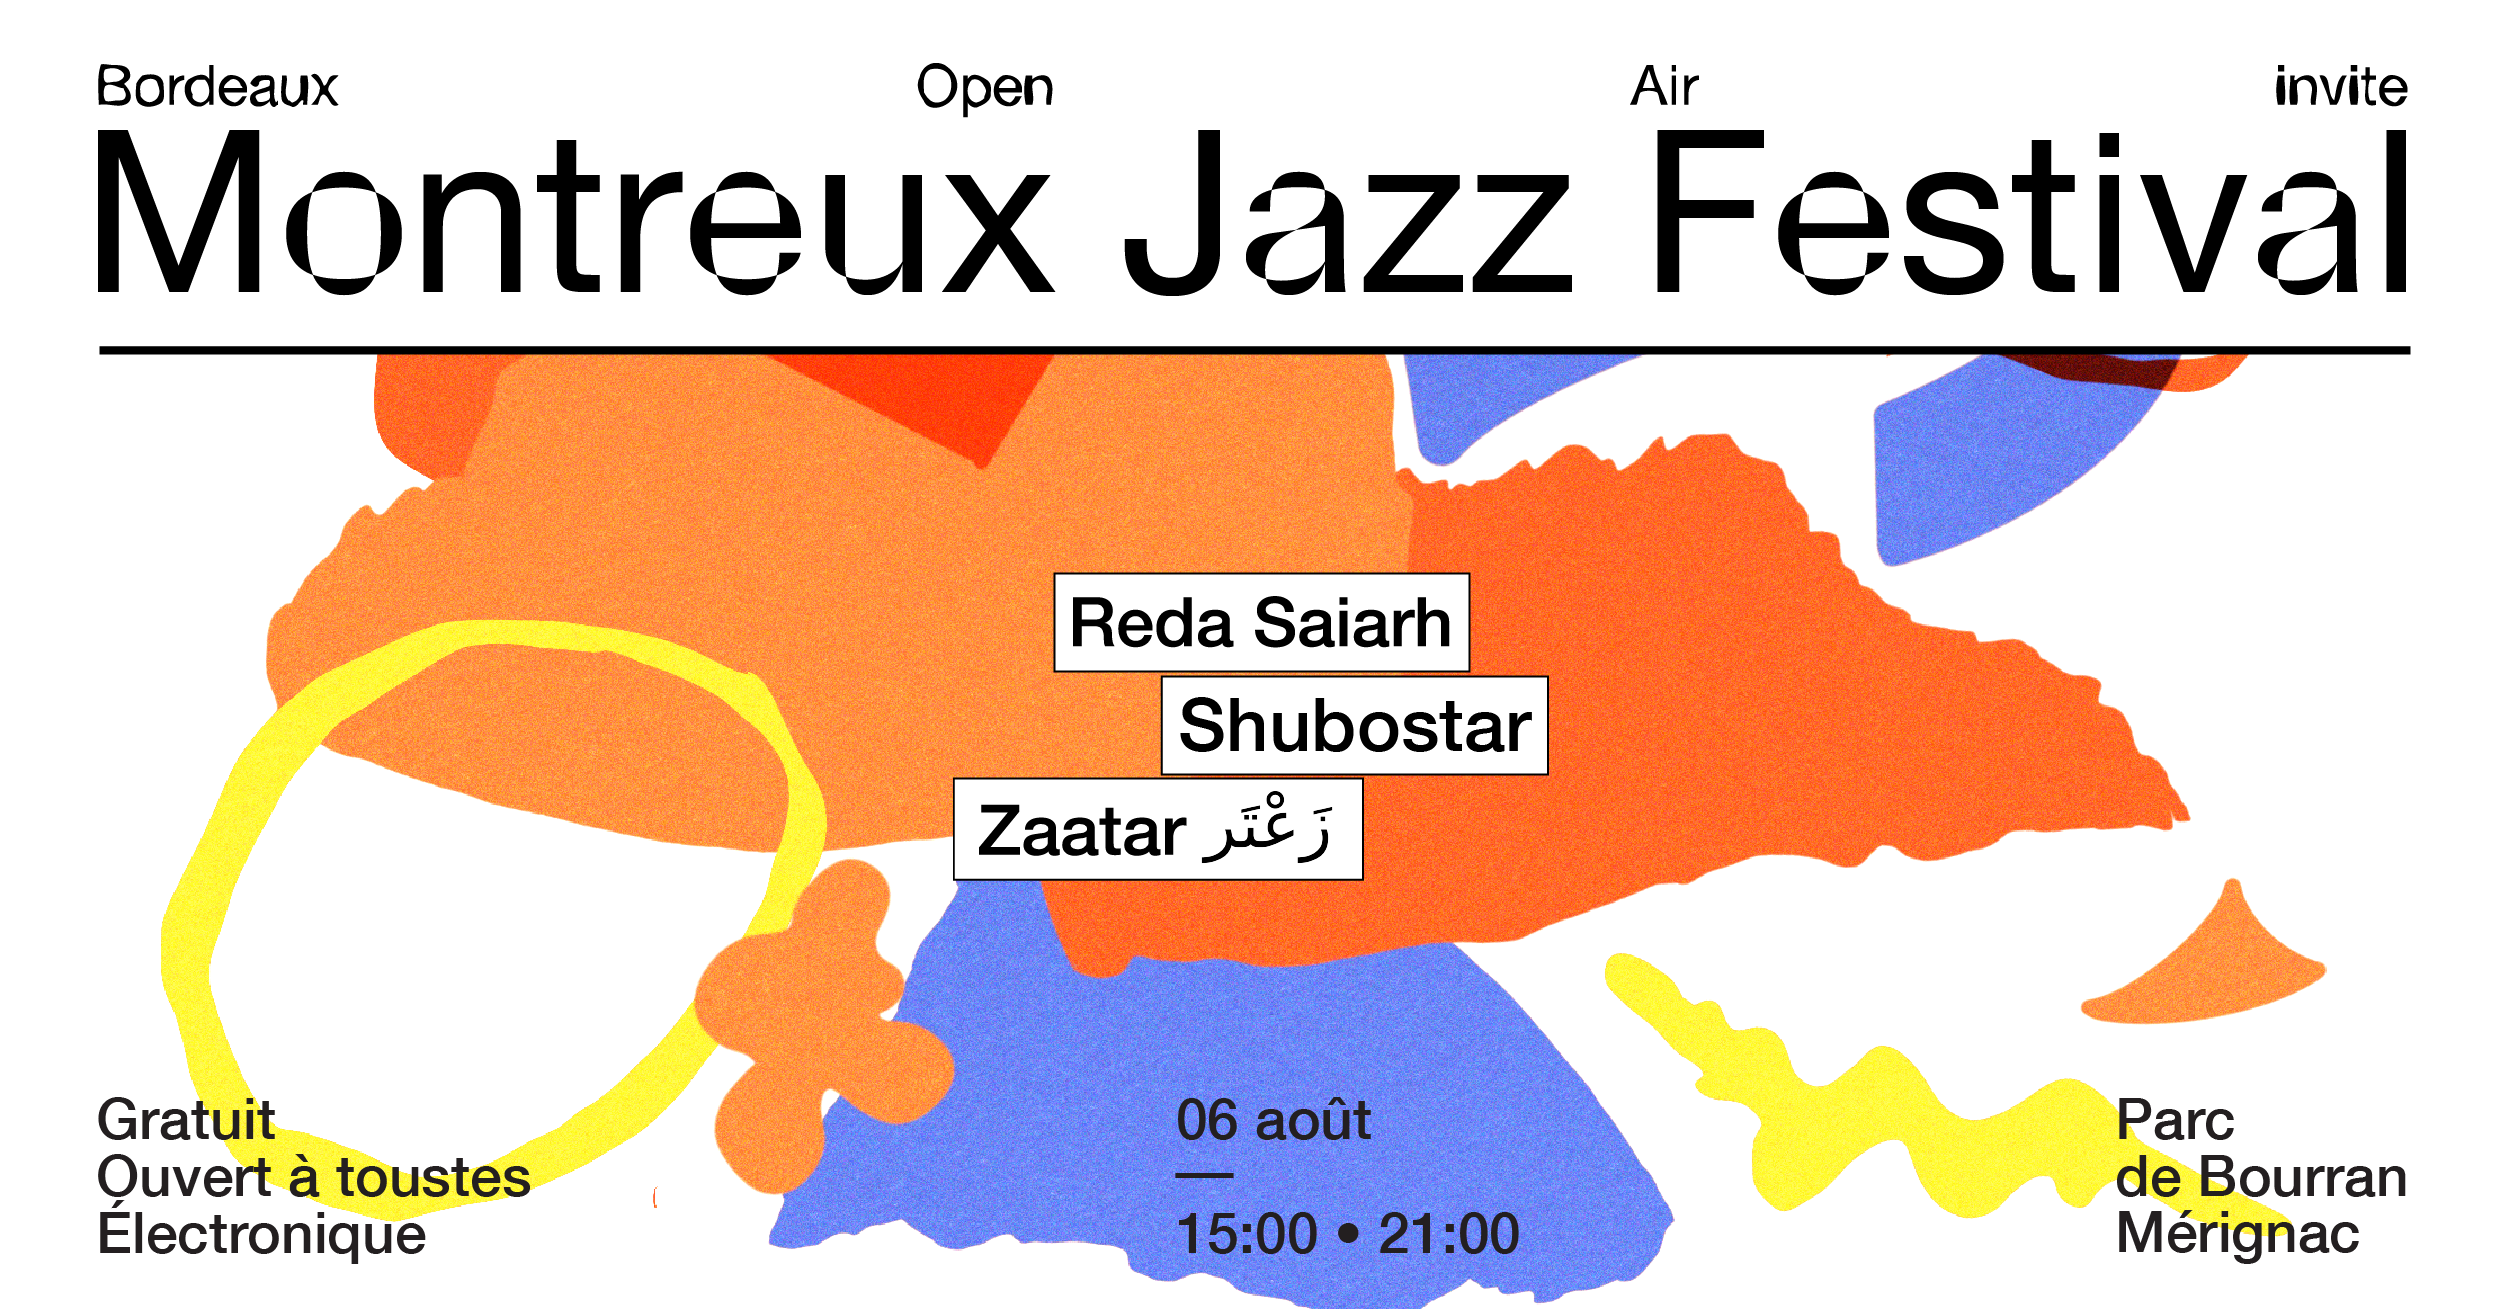 Bordeaux Open Air invites Montreux Jazz Festival - Página frontal